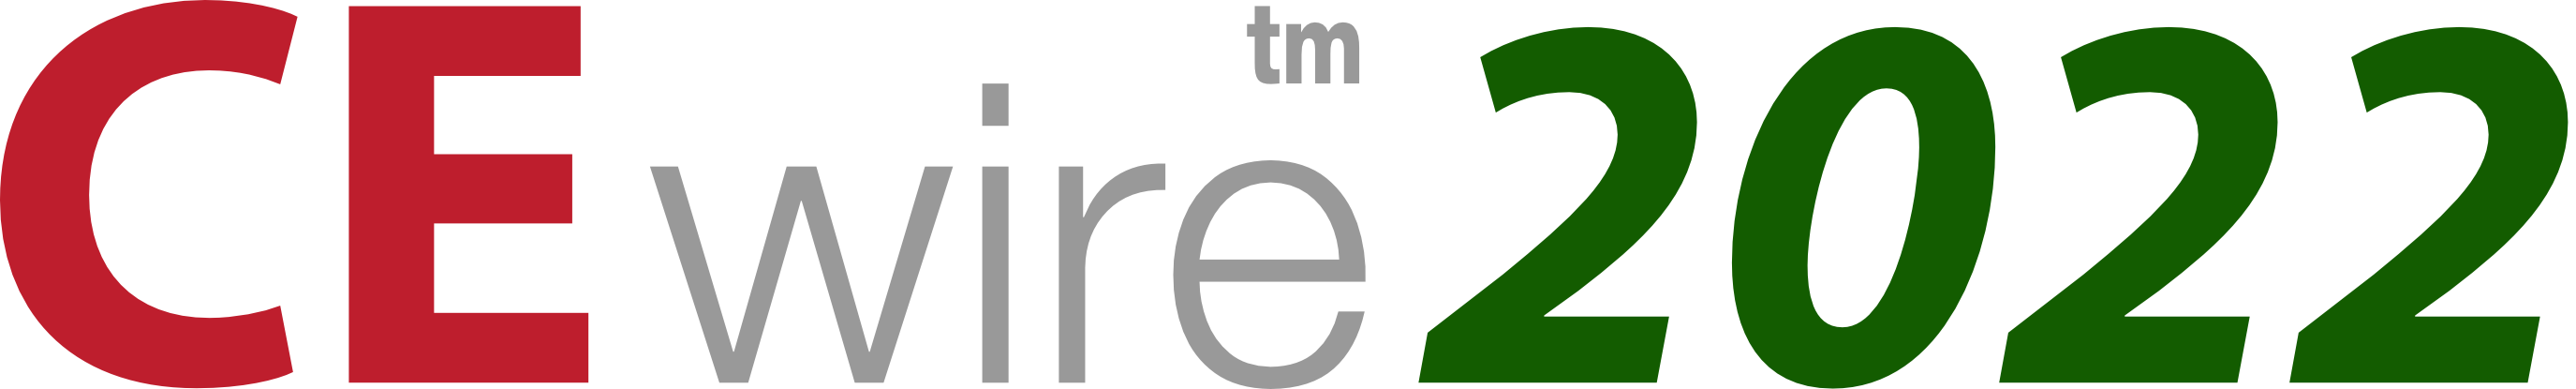 CEwire2022 Logo